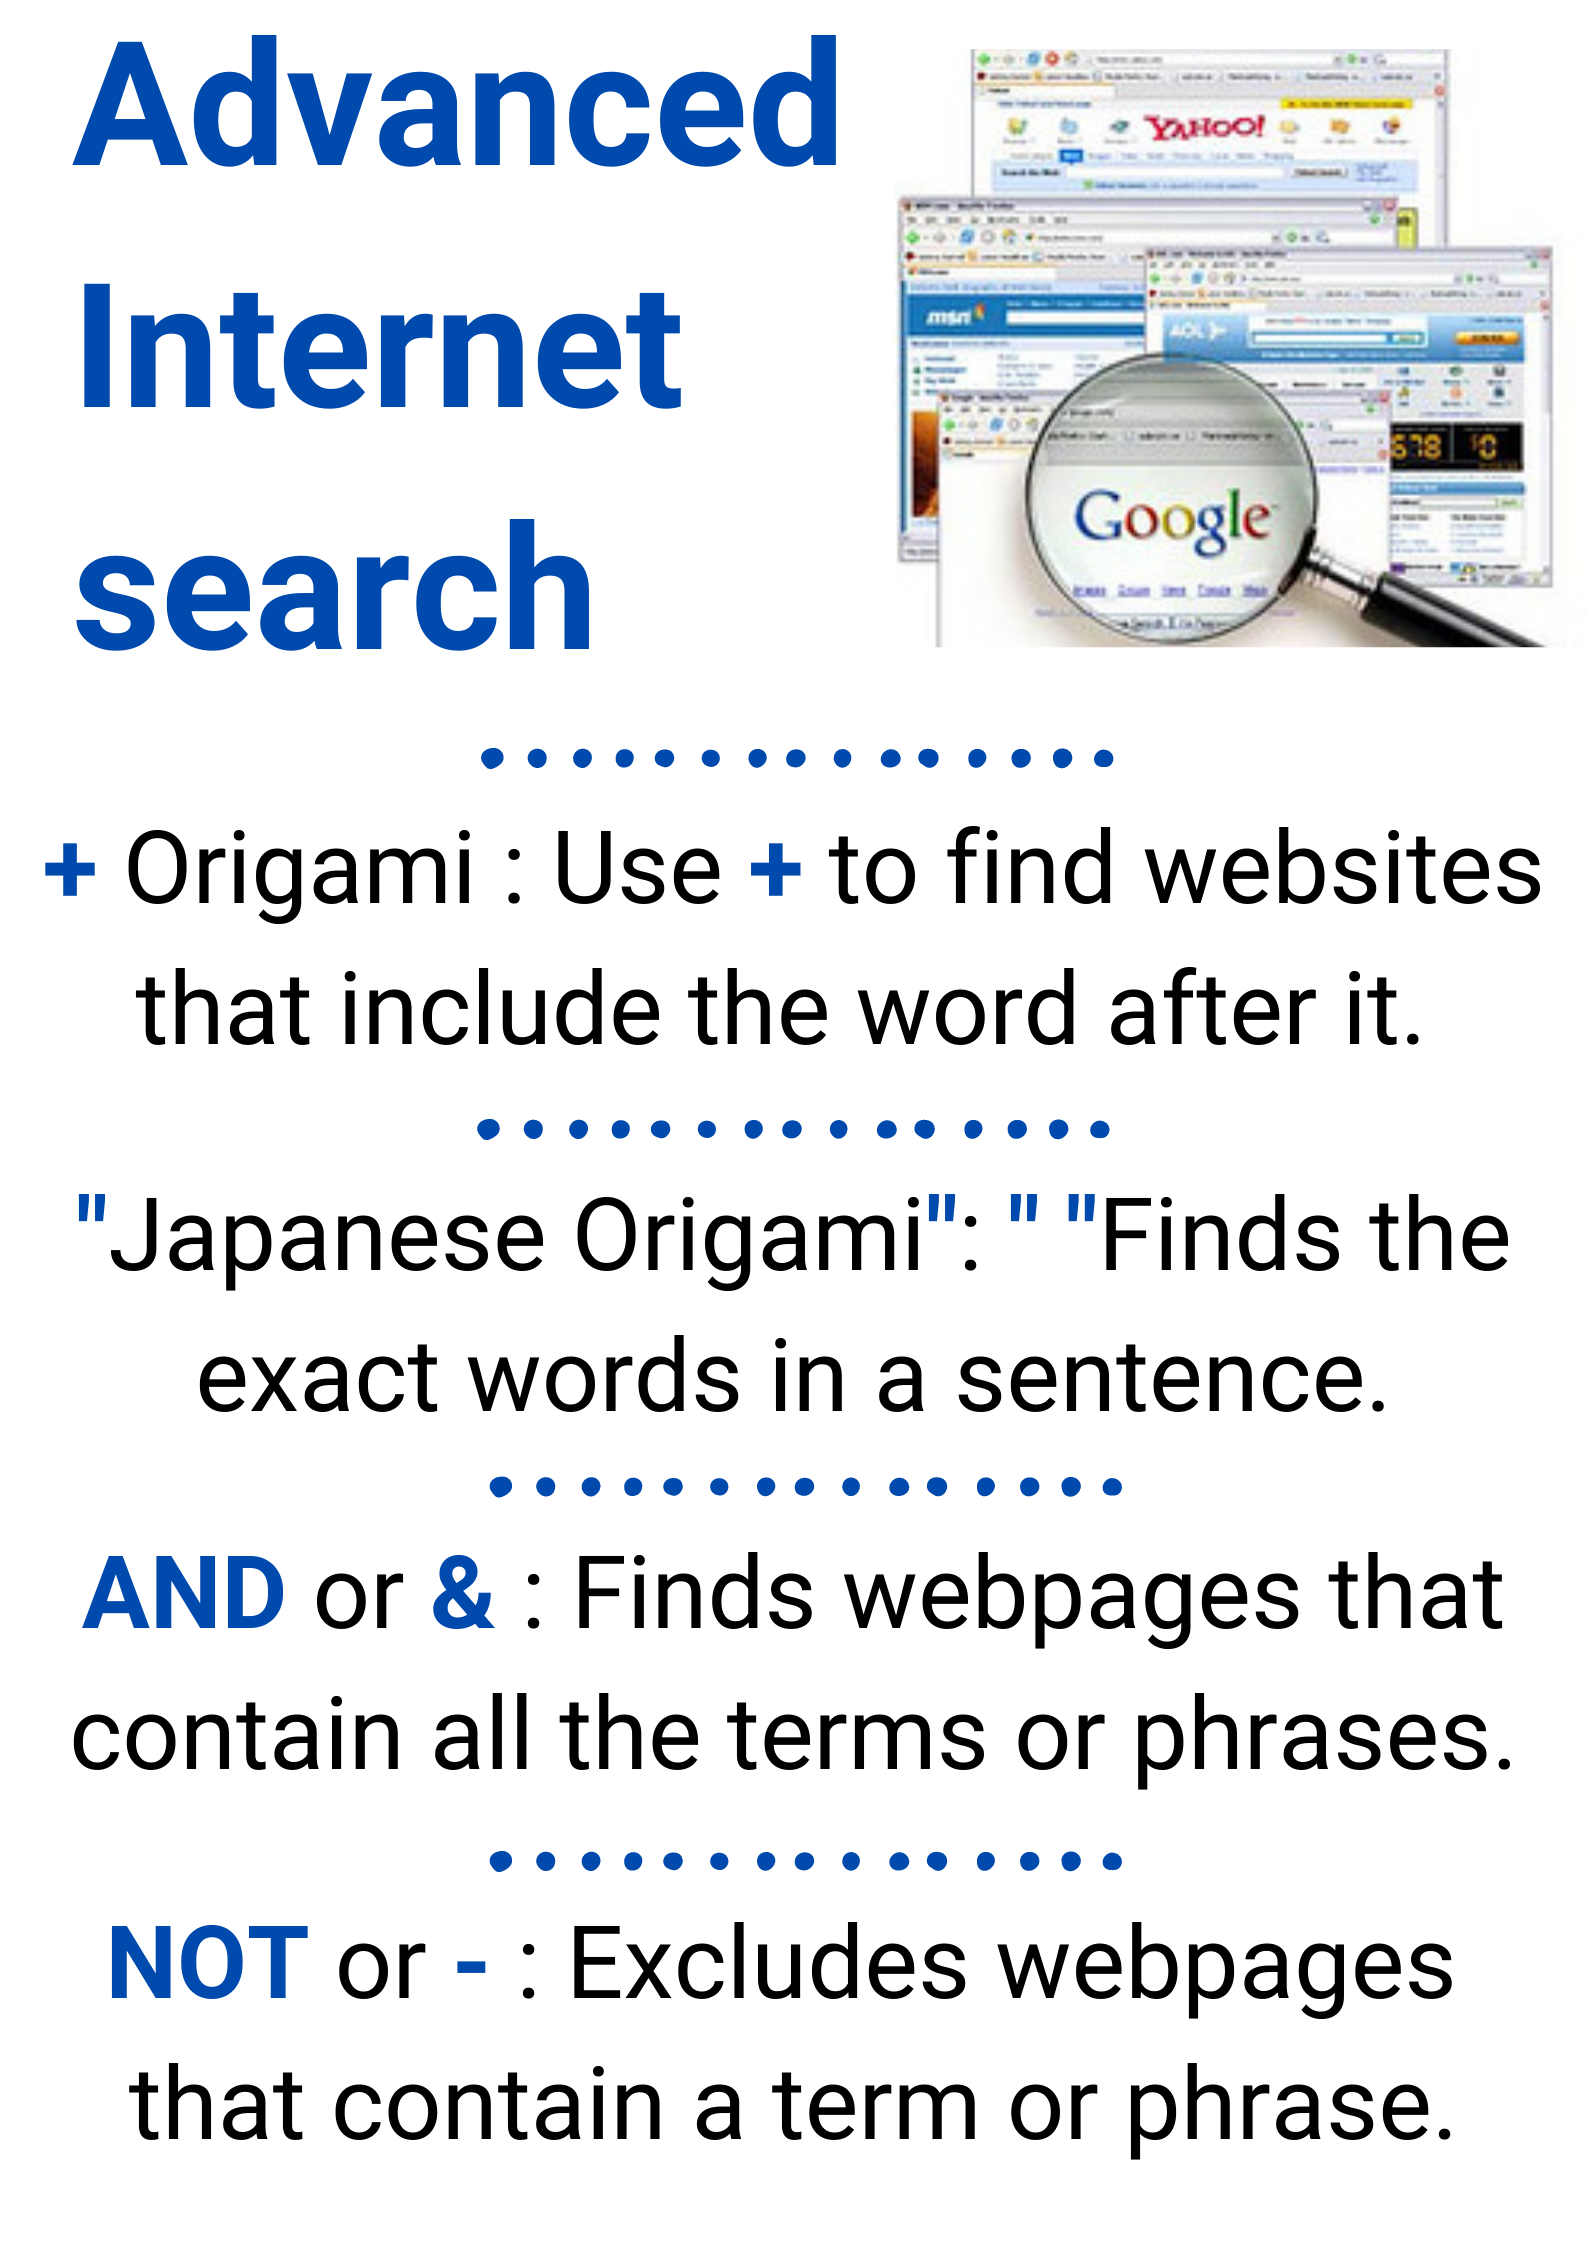 En la imagen puedes ver una infografía que describe cómo realizar una búsqueda avanzada en Internet